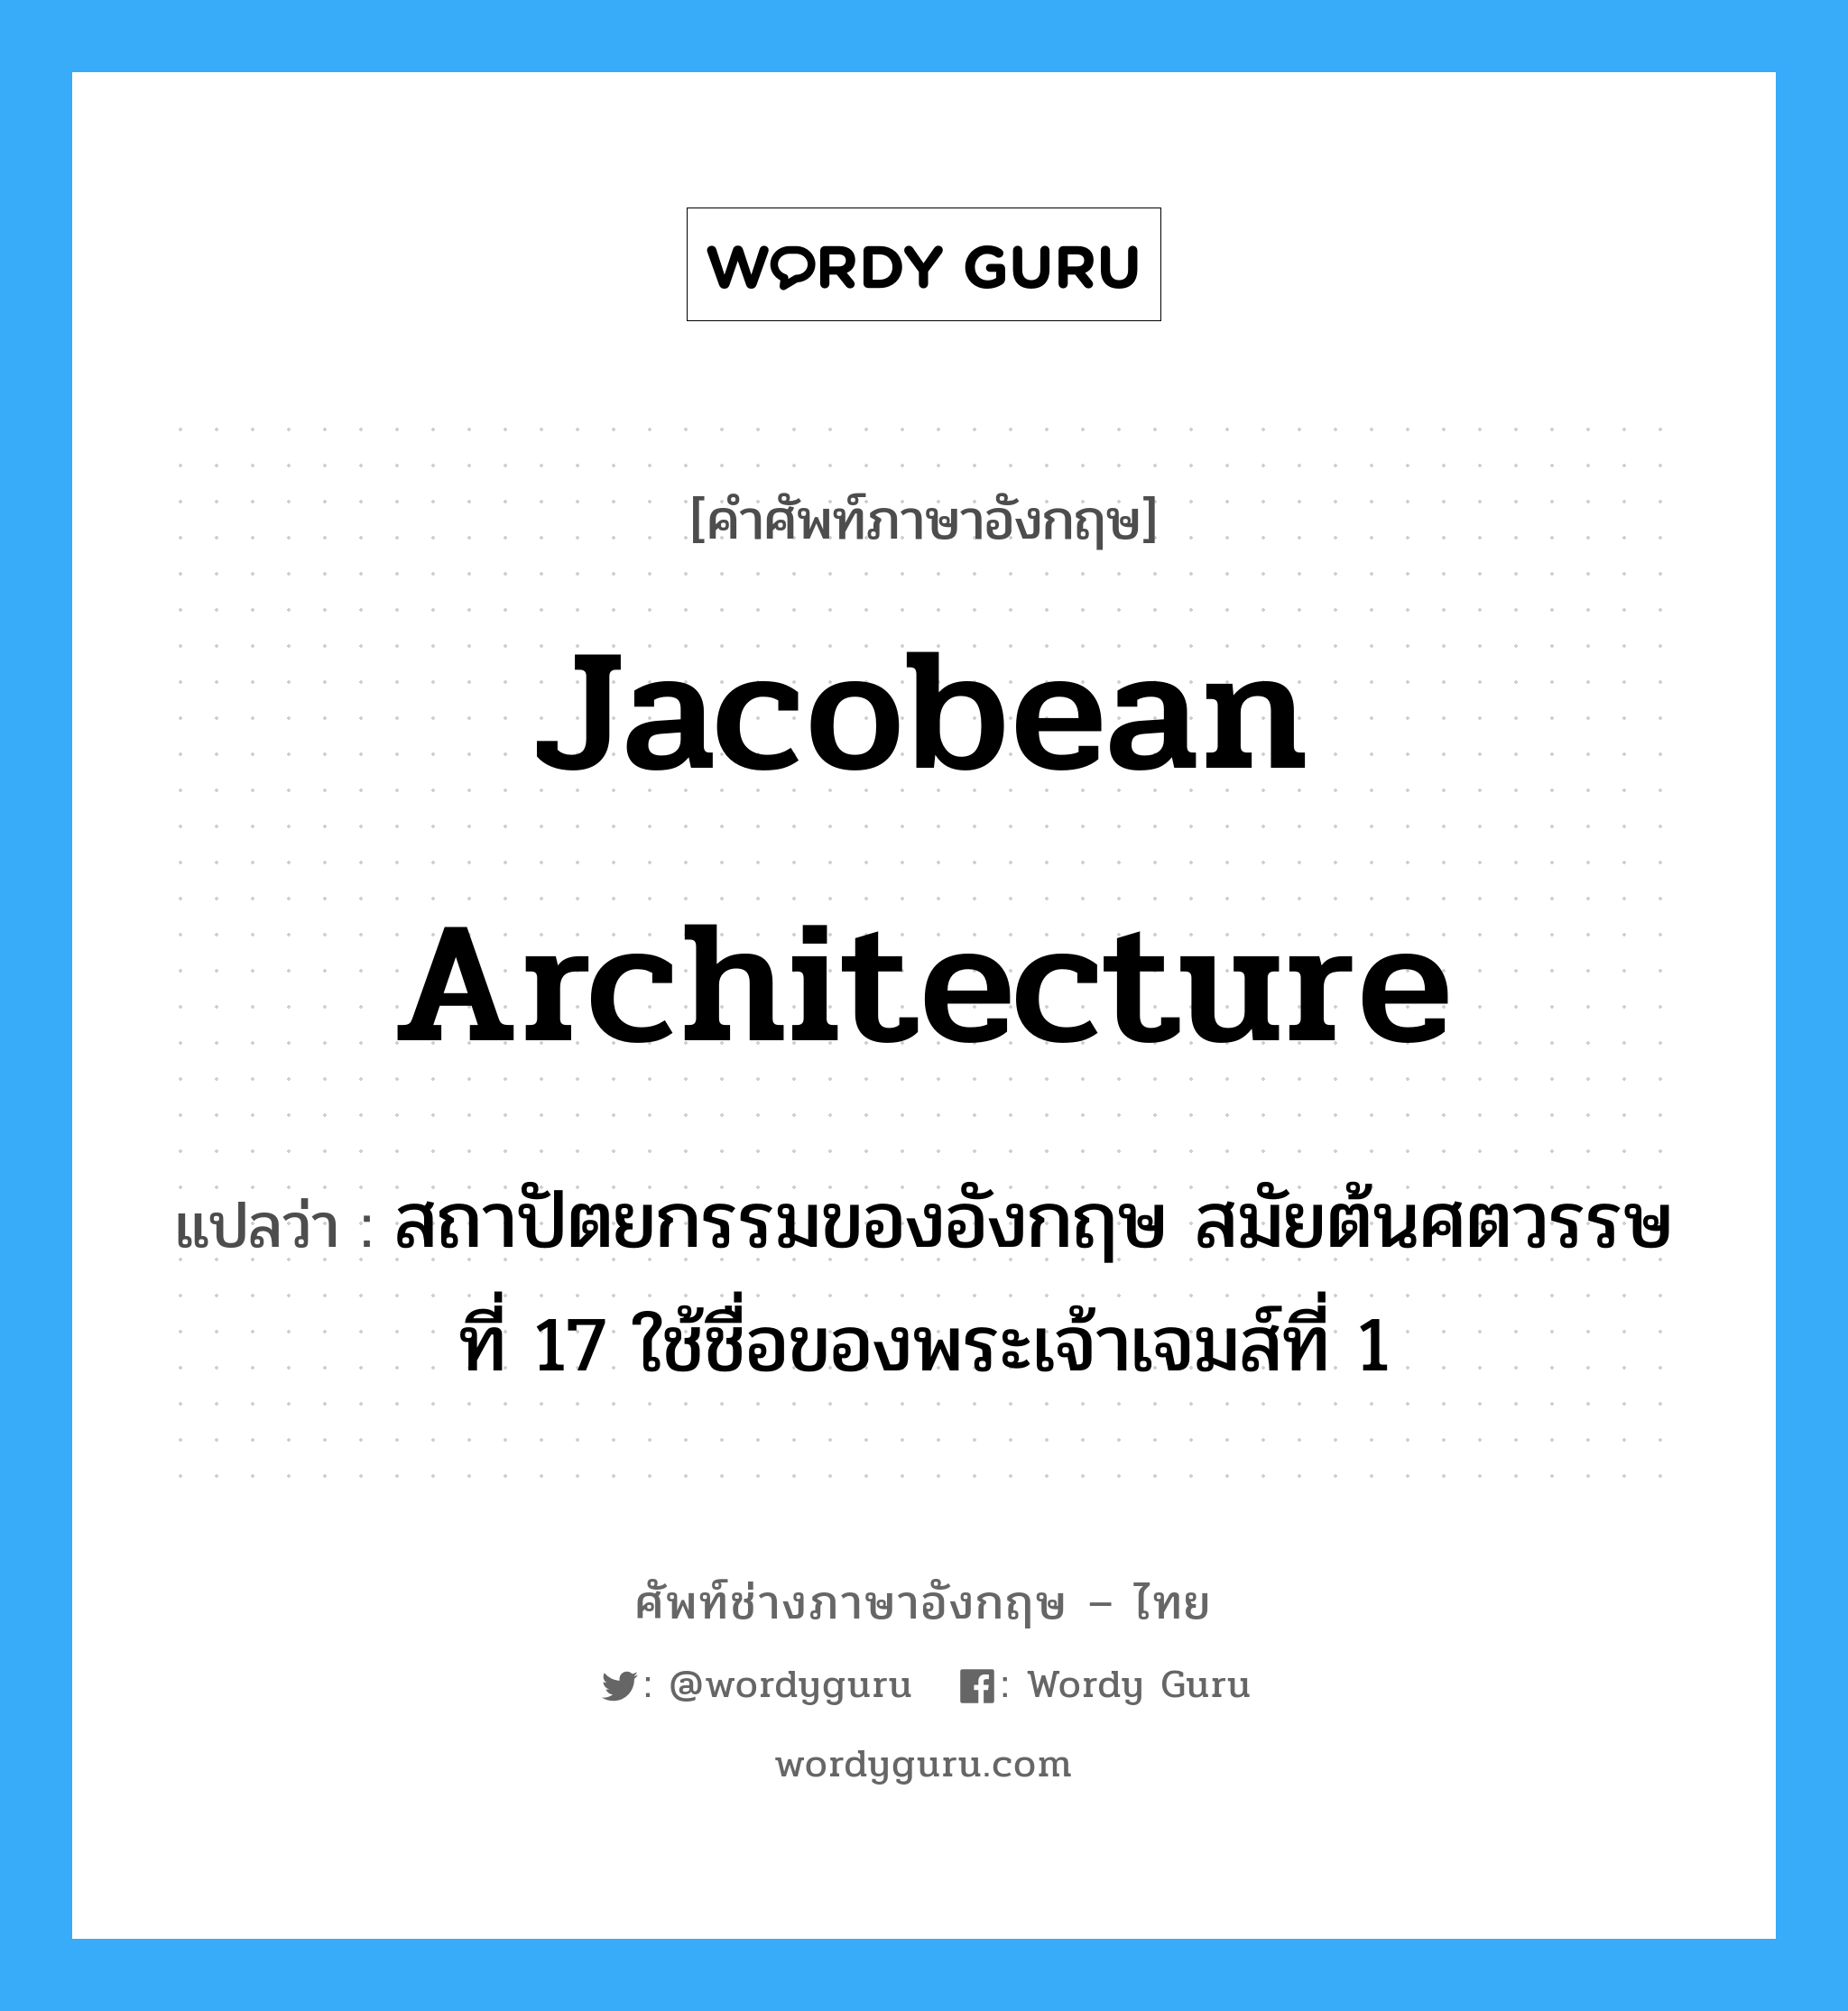 Jacobean architecture แปลว่า?, คำศัพท์ช่างภาษาอังกฤษ - ไทย Jacobean architecture คำศัพท์ภาษาอังกฤษ Jacobean architecture แปลว่า สถาปัตยกรรมของอังกฤษ สมัยต้นศตวรรษที่ 17 ใช้ชื่อของพระเจ้าเจมส์ที่ 1